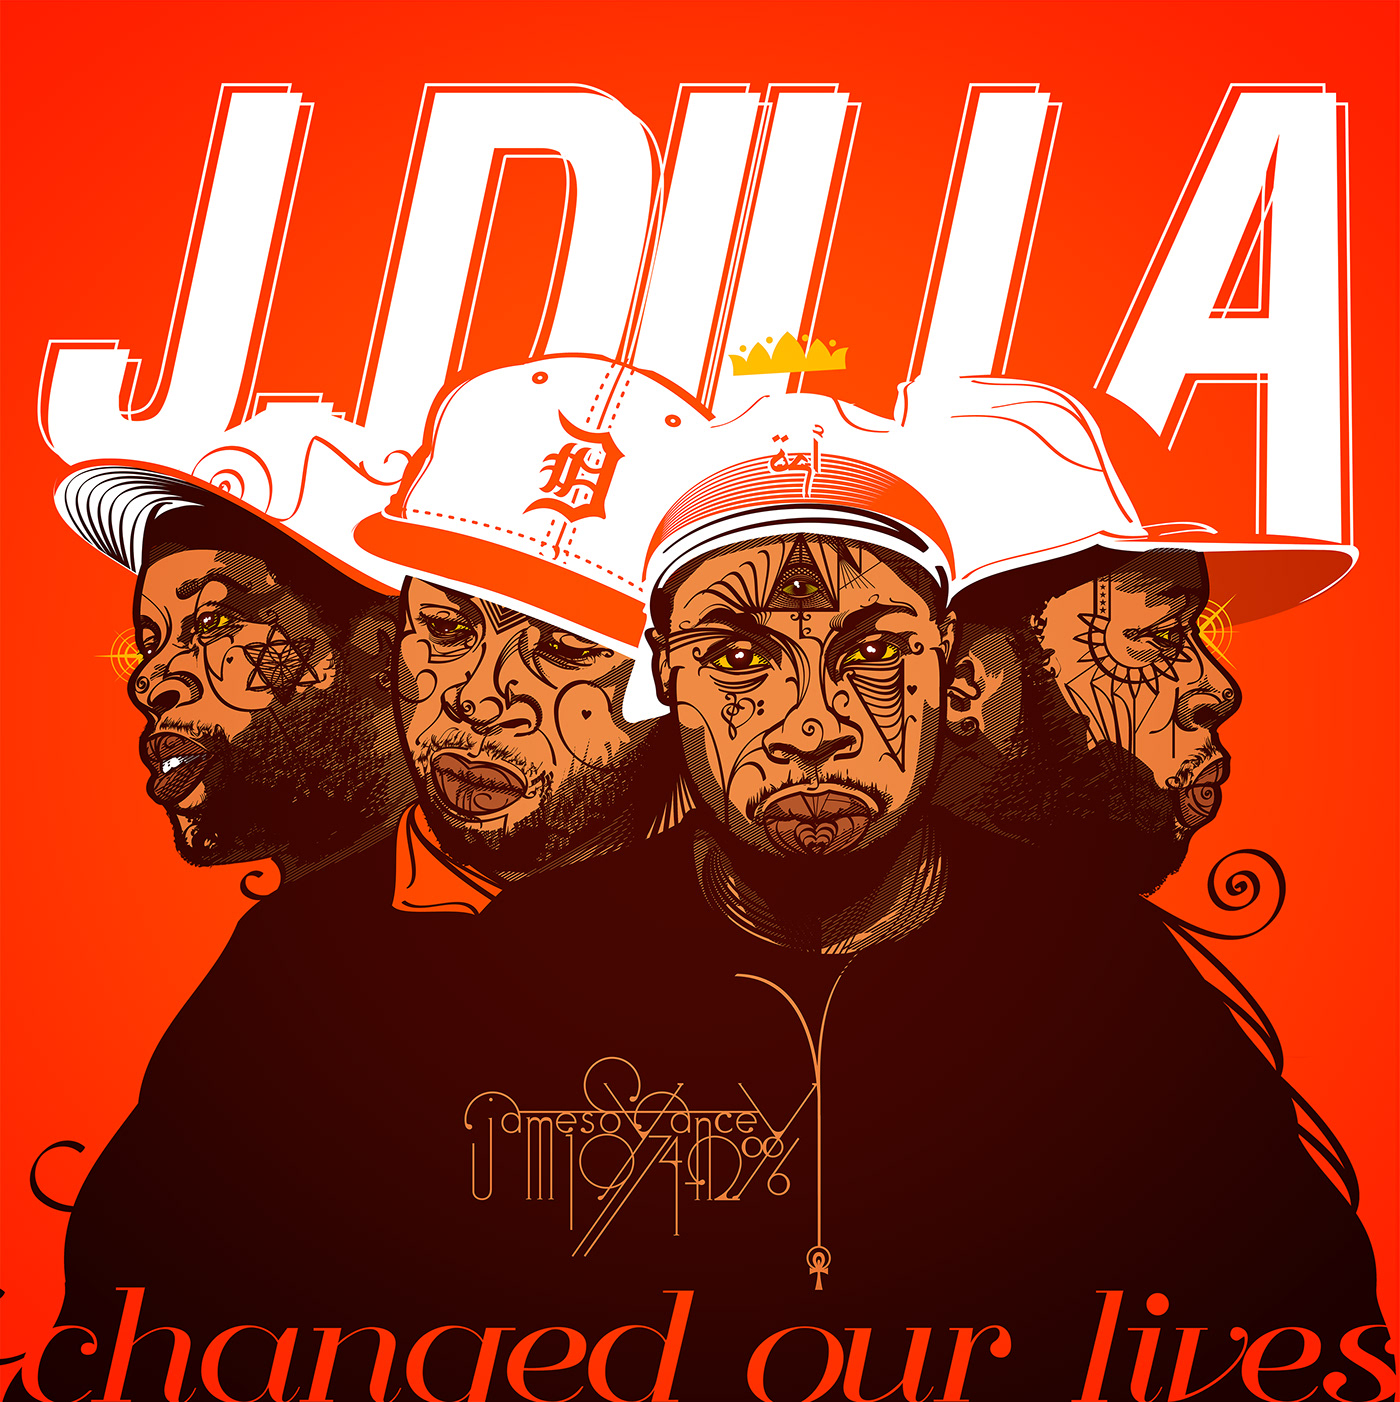 dilla hip hop producer portrait vector Digital Art  music ILLUSTRATION  JDILLA